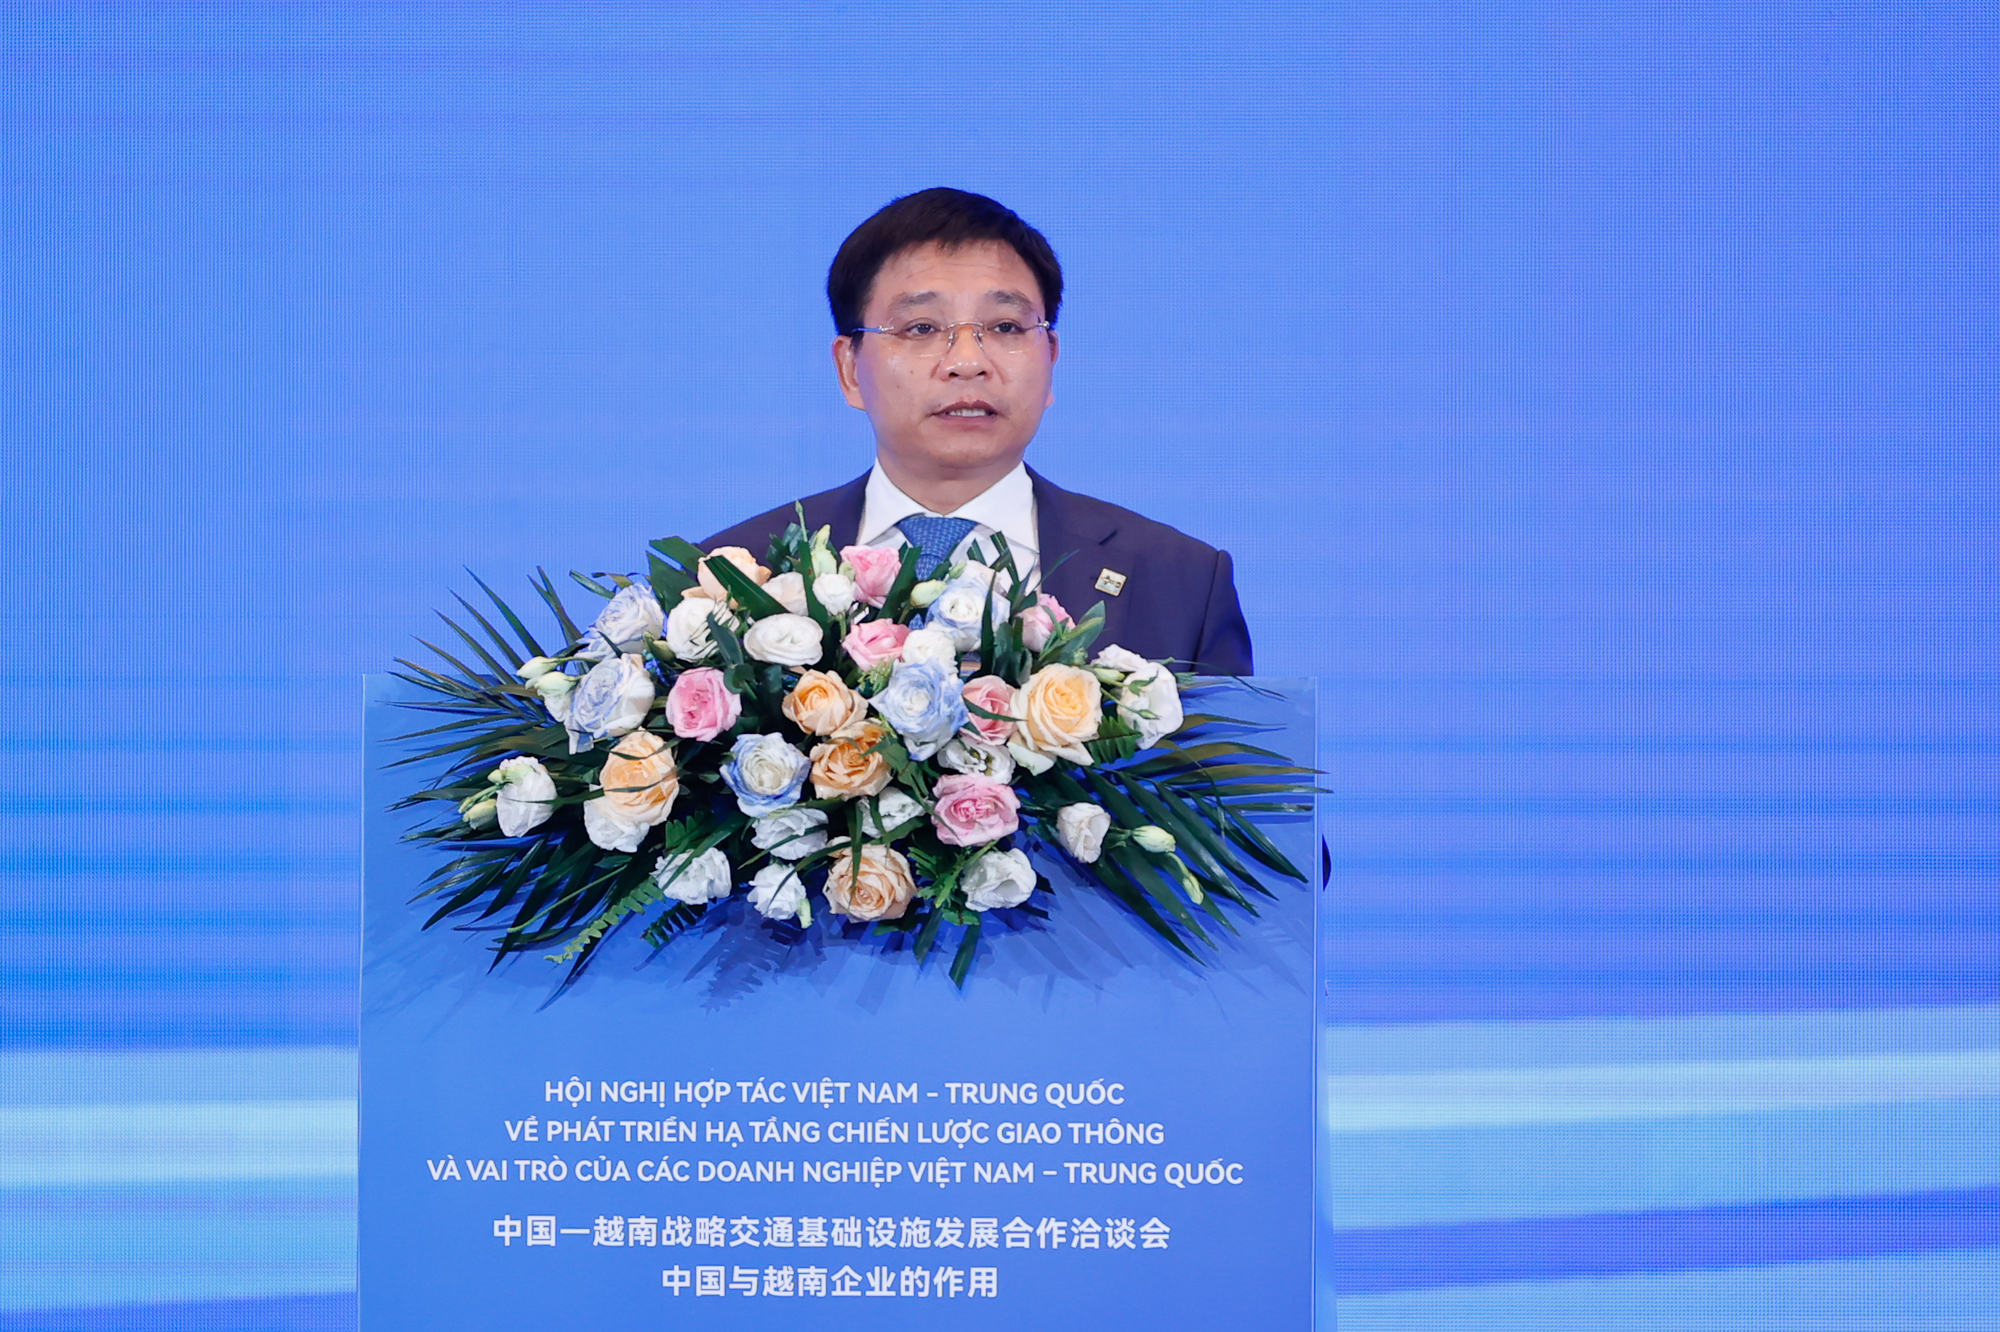 Bộ trưởng Bộ GTVT Nguyễn Văn Thắng phát biểu tại Hội nghị - Ảnh: VGP/Nhật Bắc